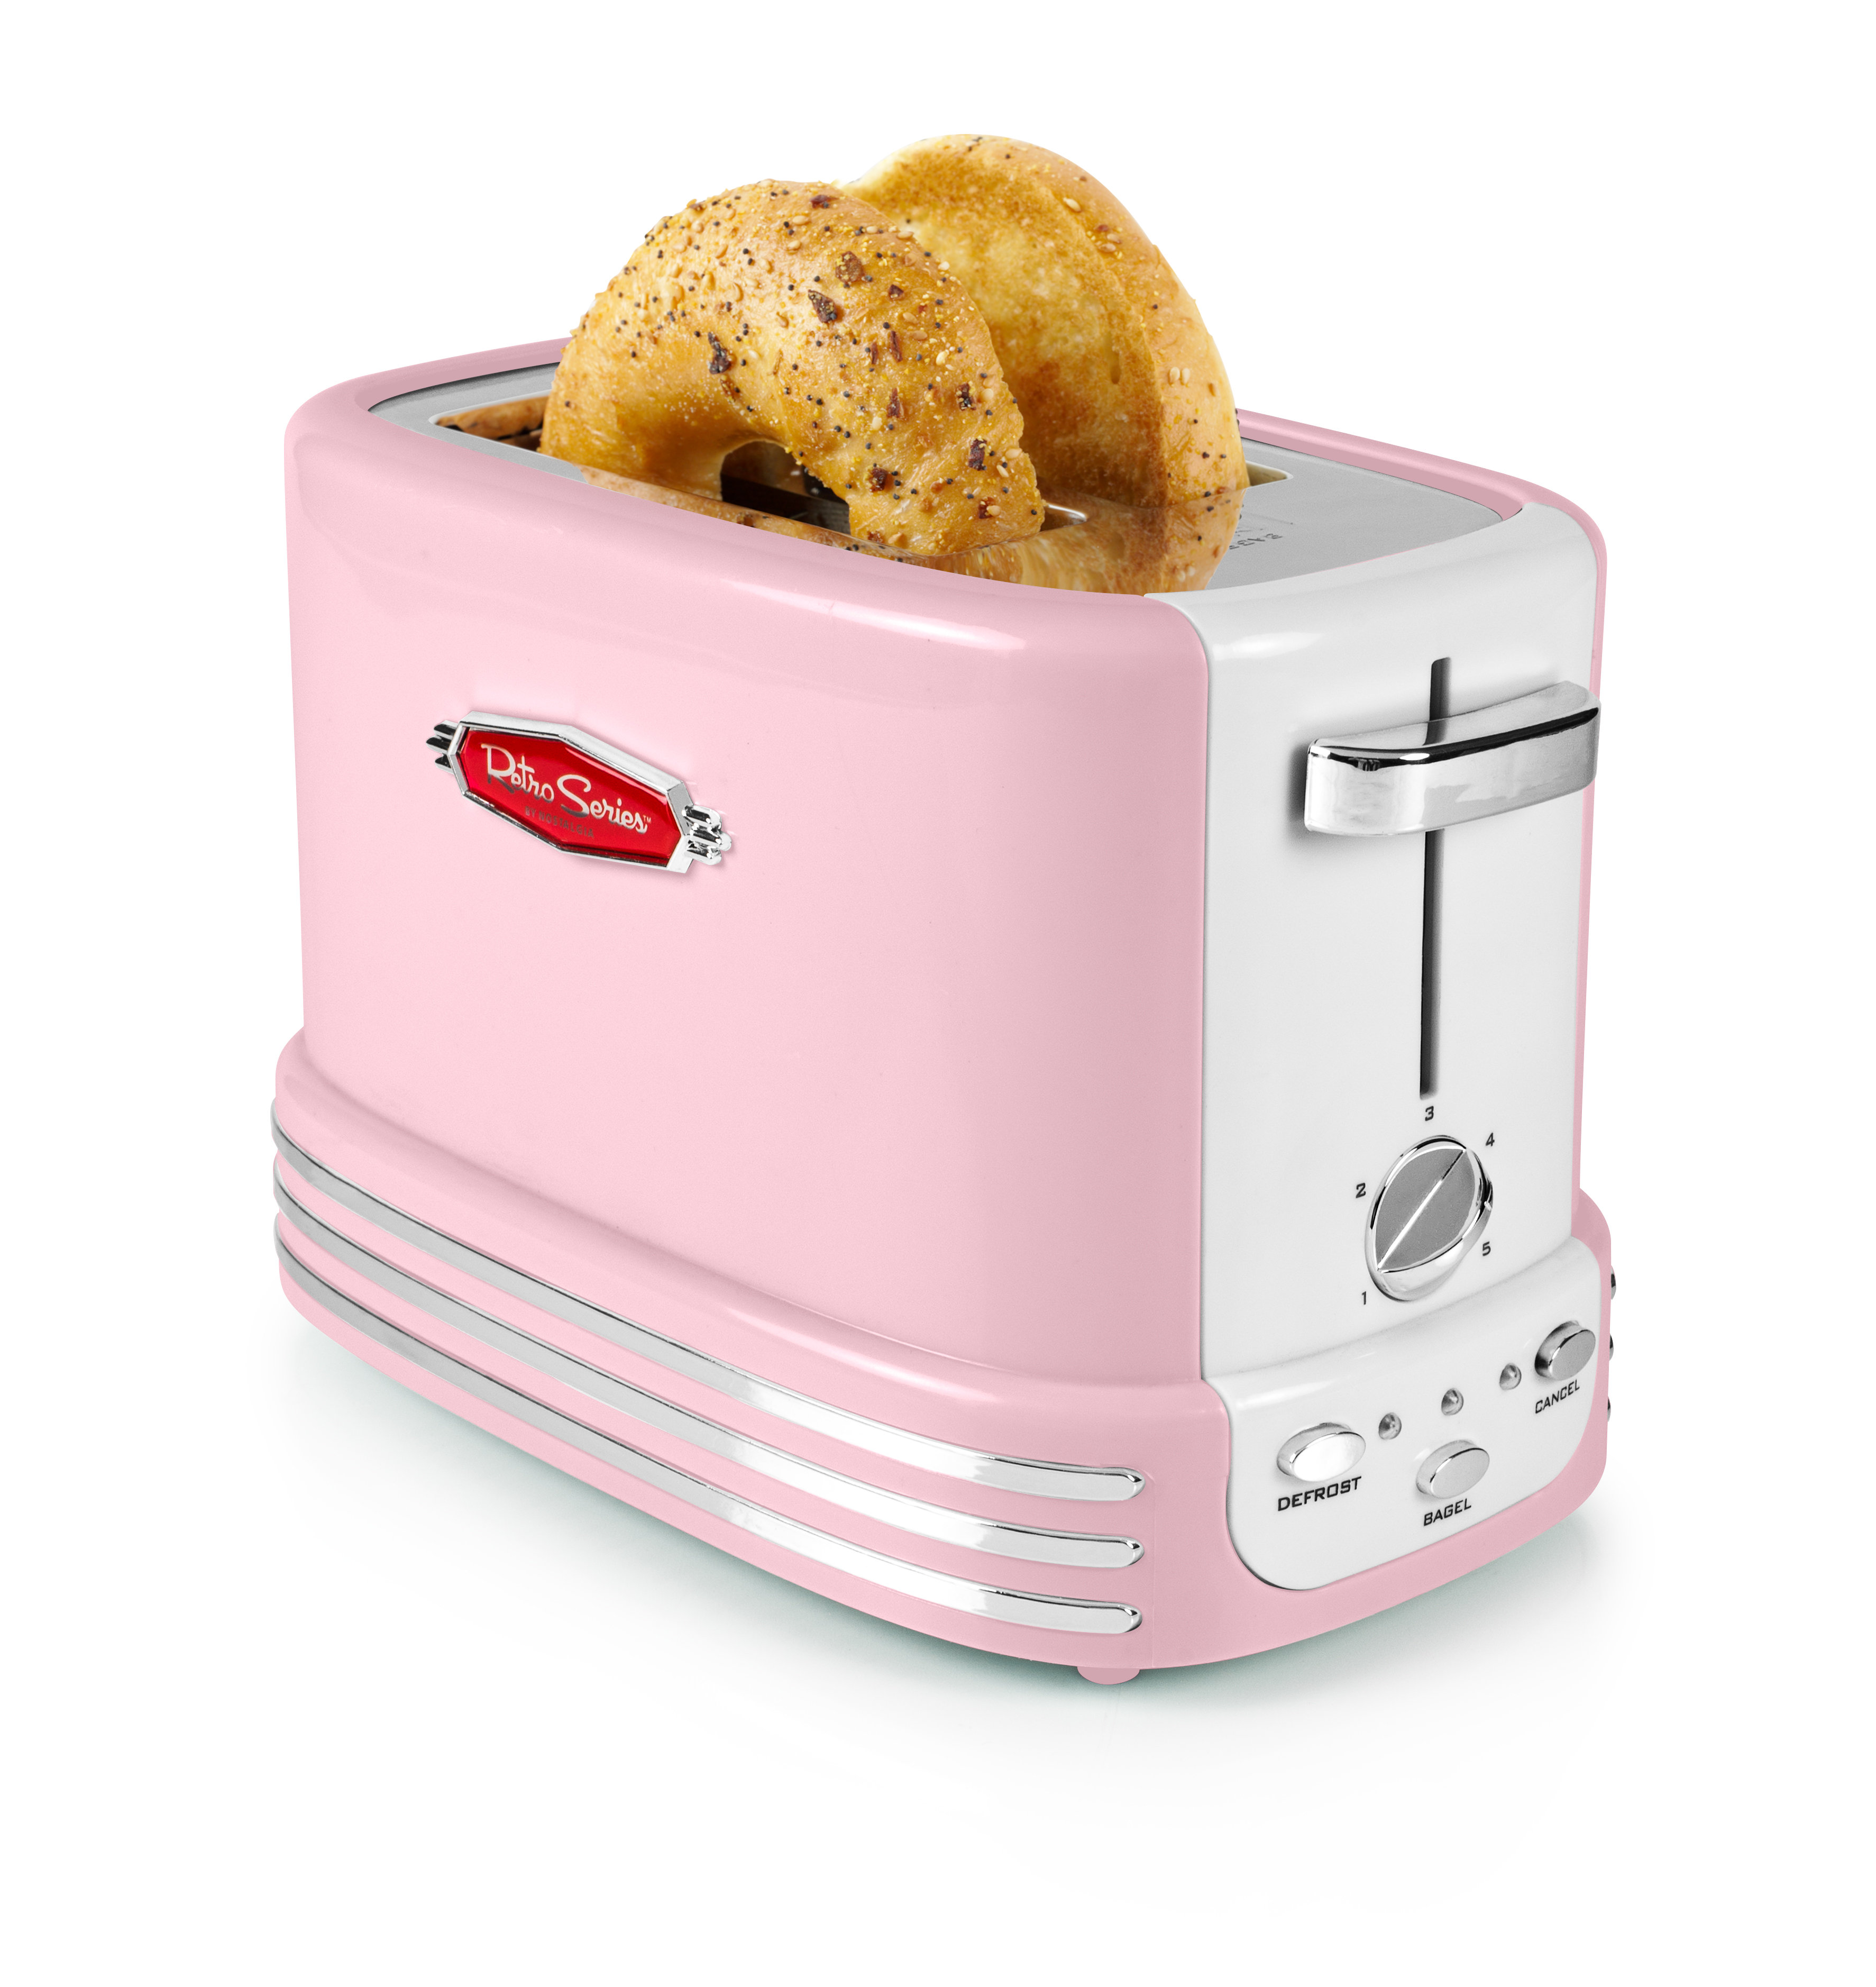 https://assets.wfcdn.com/im/09801801/compr-r85/2335/233547593/nostalgia-2-slice-toaster.jpg